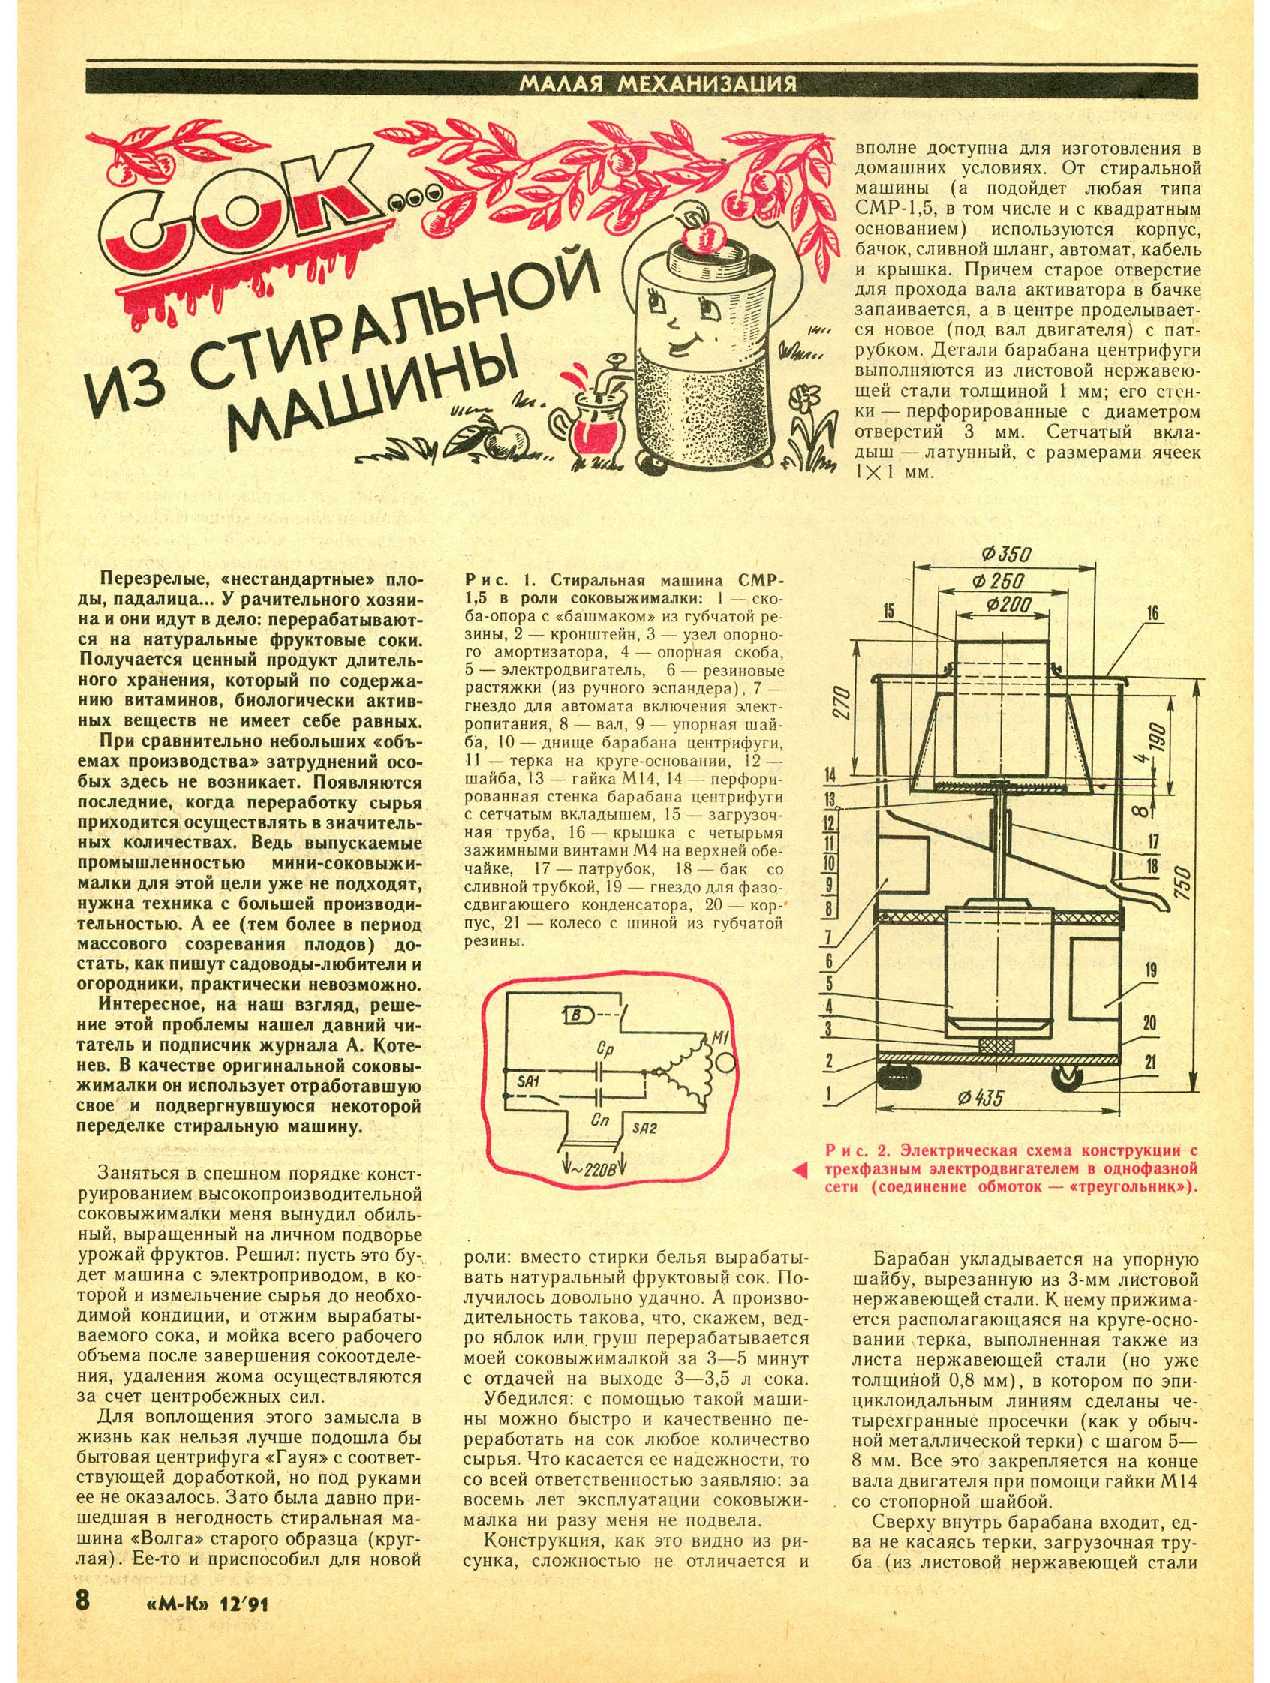 МК 12, 1991, 8 c.